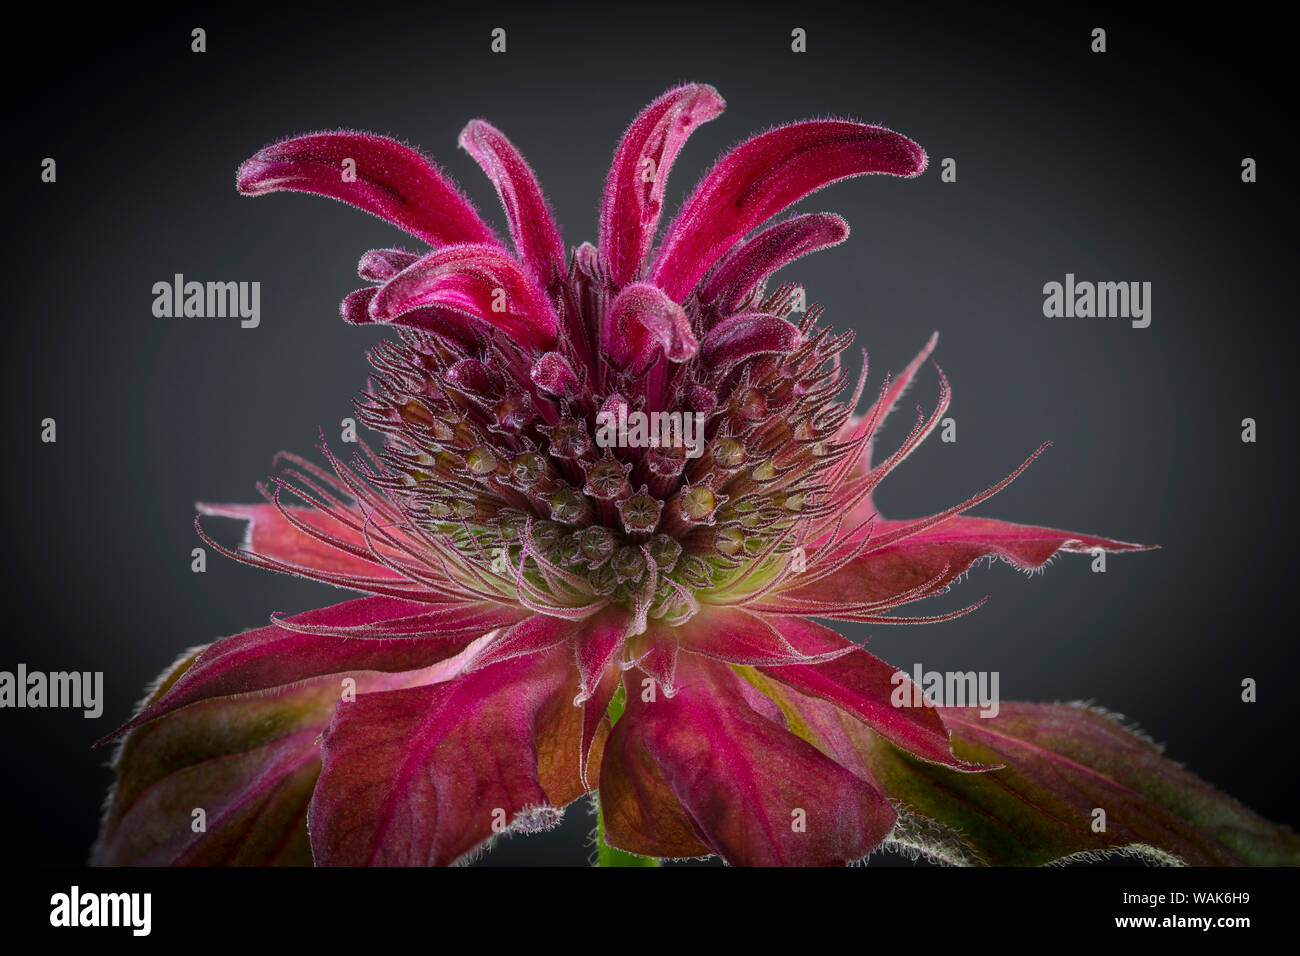 L'État de Washington, USA, Seabeck. Monardes flower close-up. En tant que crédit : Don Paulson / Jaynes Gallery / DanitaDelimont.com Banque D'Images